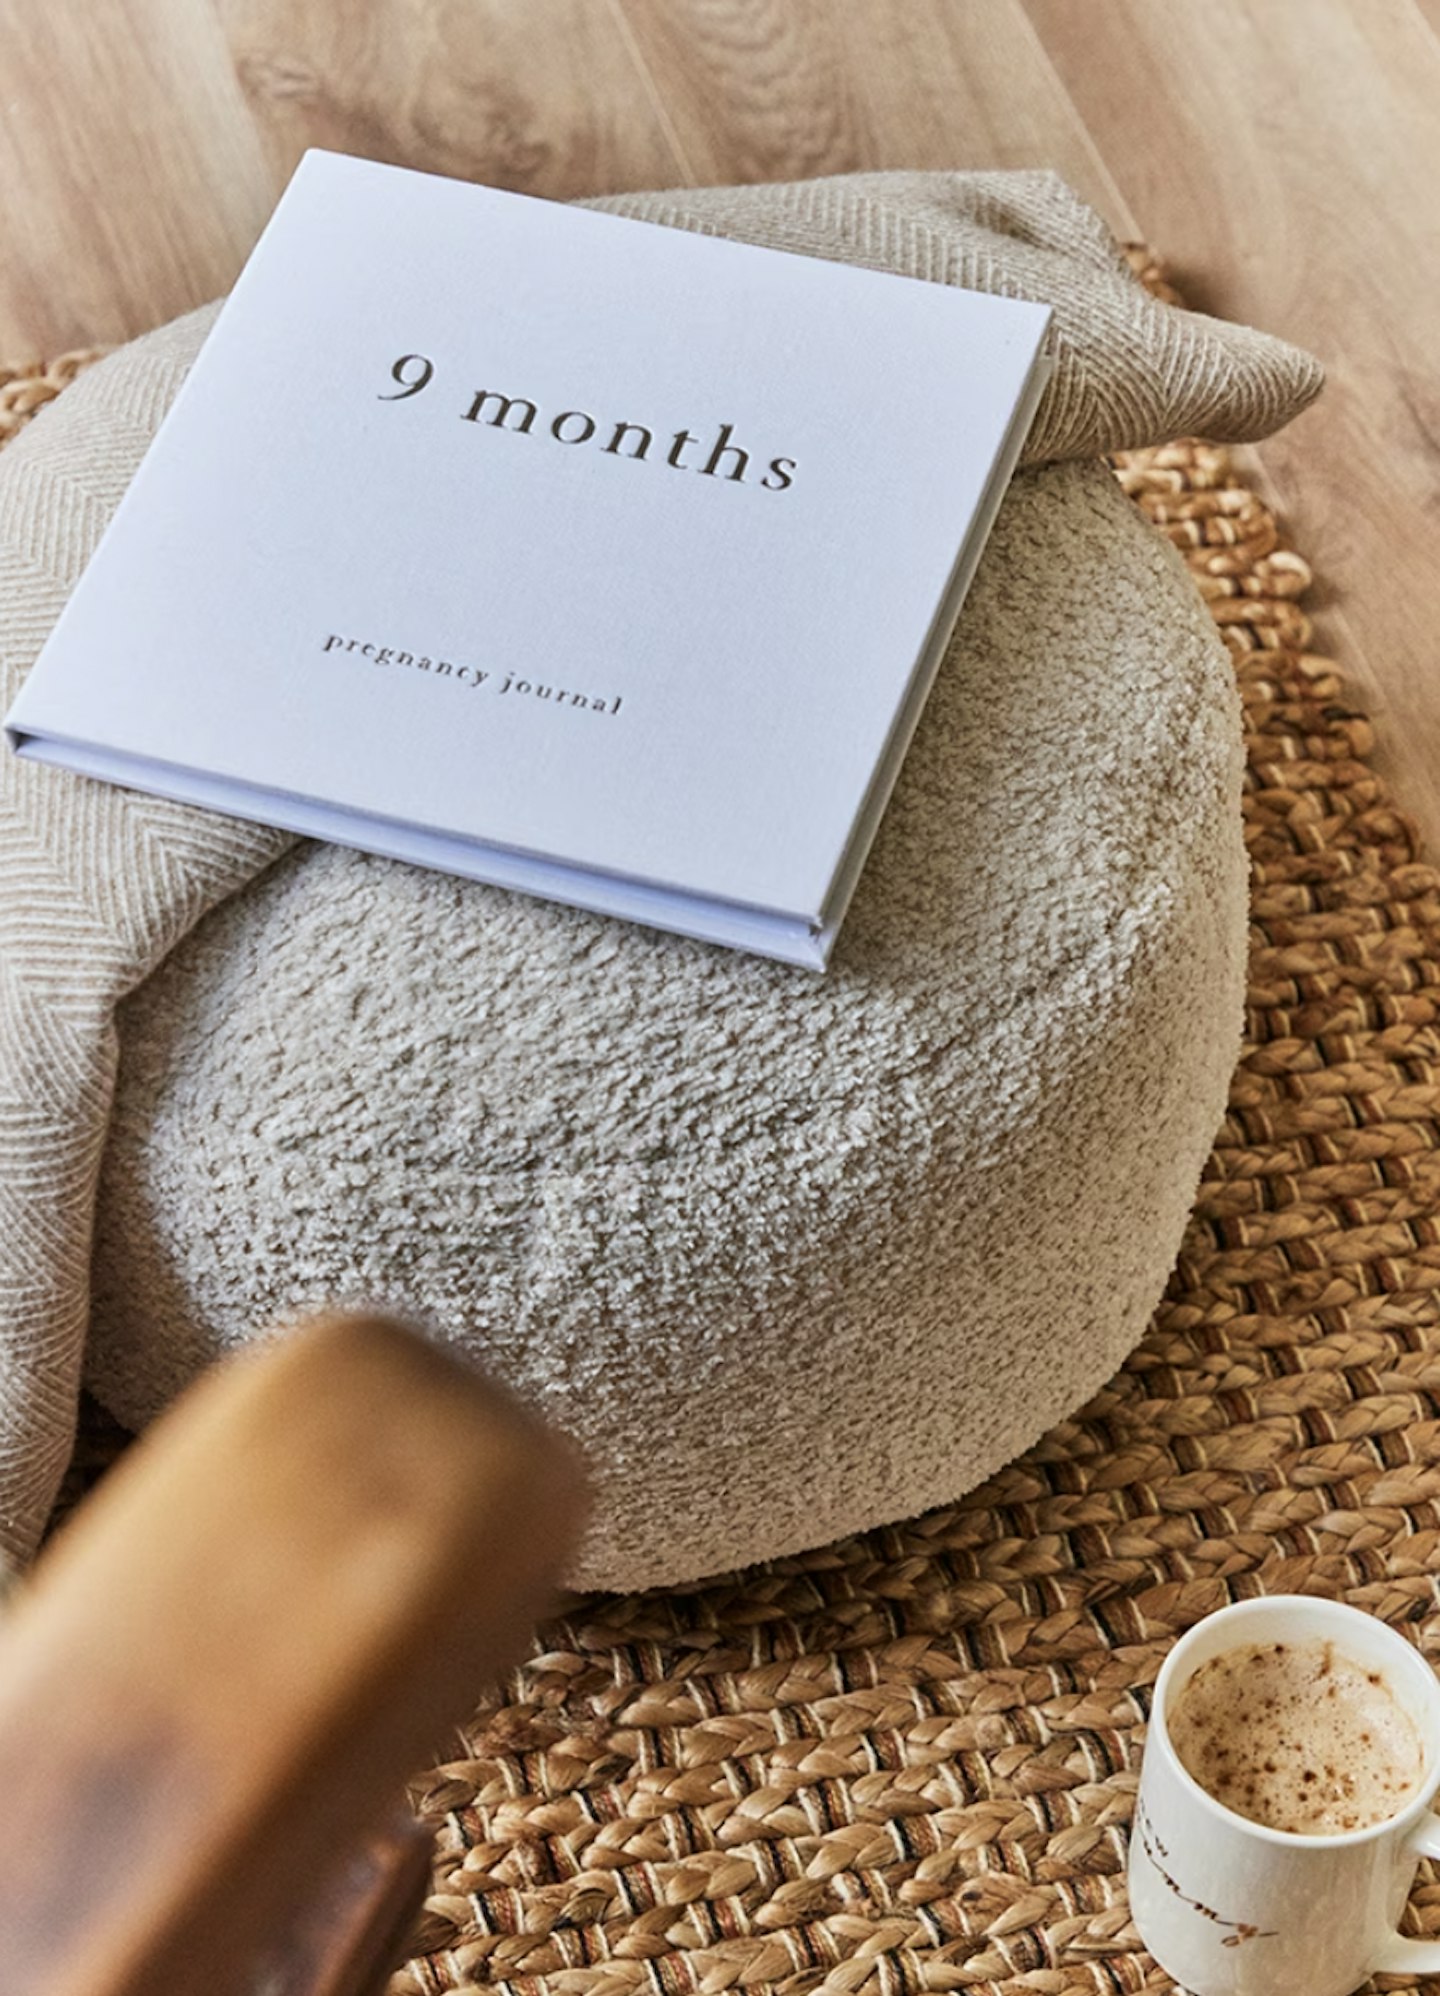 Bambino Linen Pregnancy Journal - 9 Months